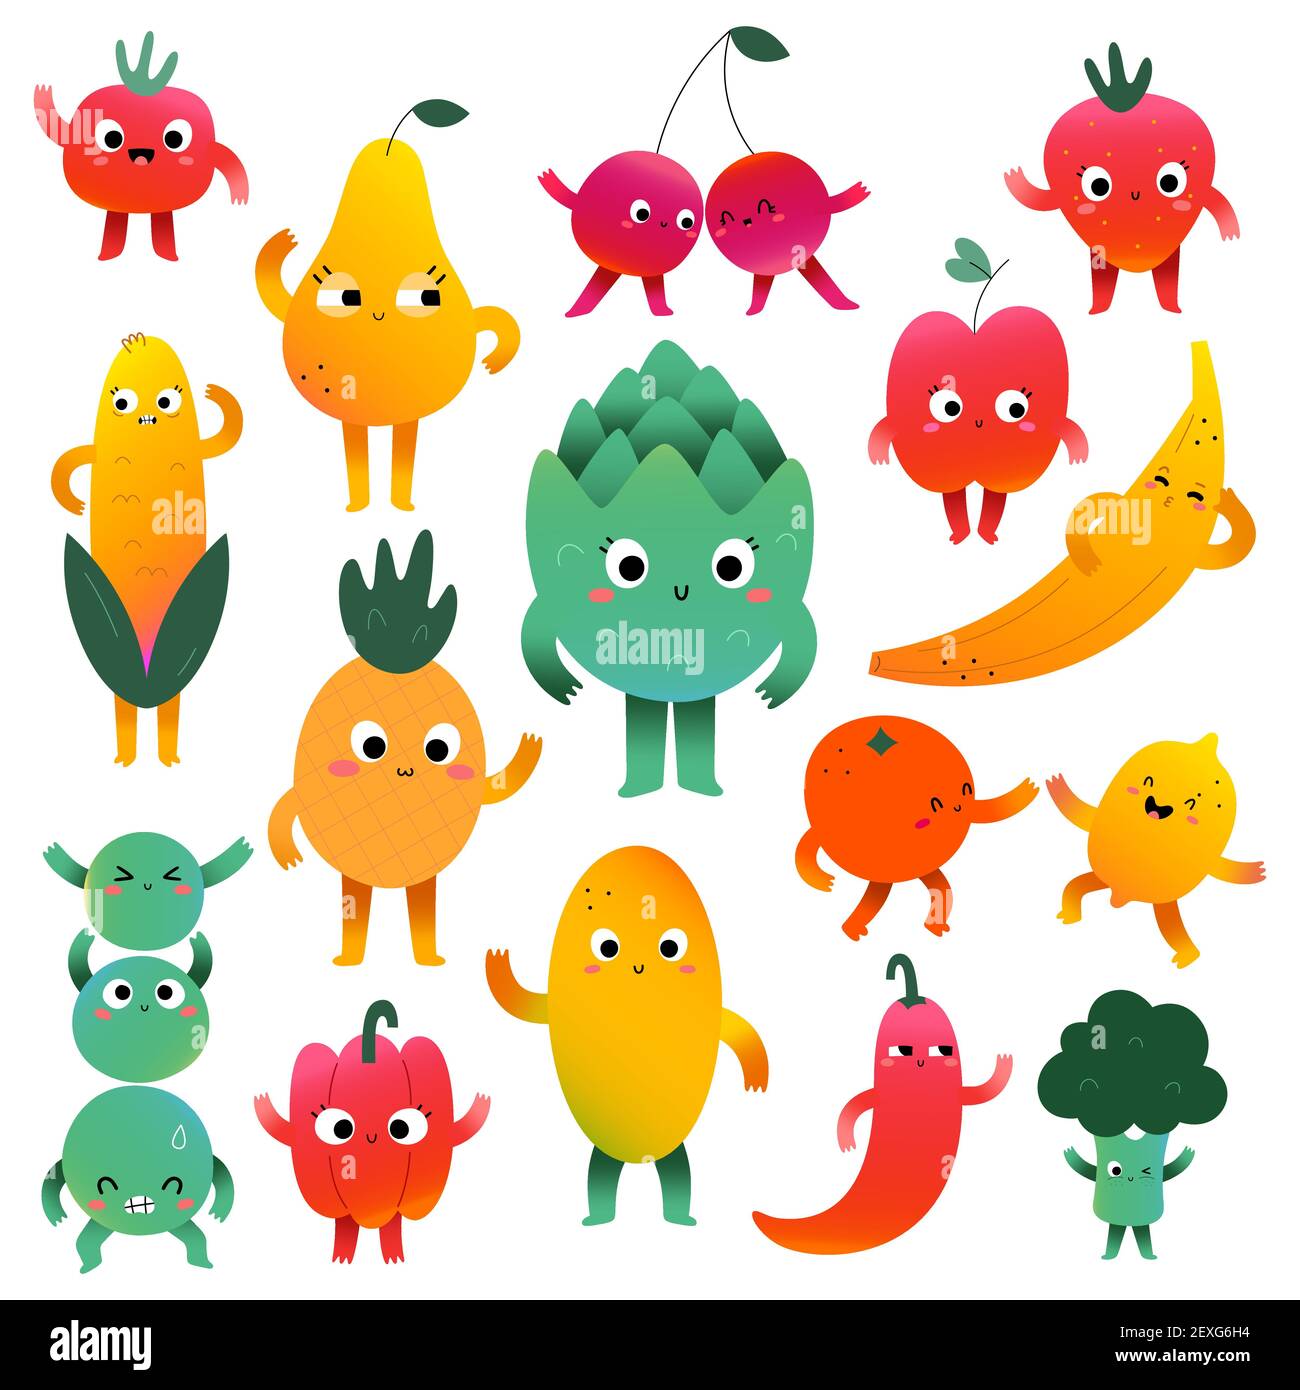 Carino ortaggi e personaggi di frutta con espressioni facciali, mascotte kawaii cartoon, raccolta di felici creature del cibo divertente, illustrazione vettoriale Illustrazione Vettoriale